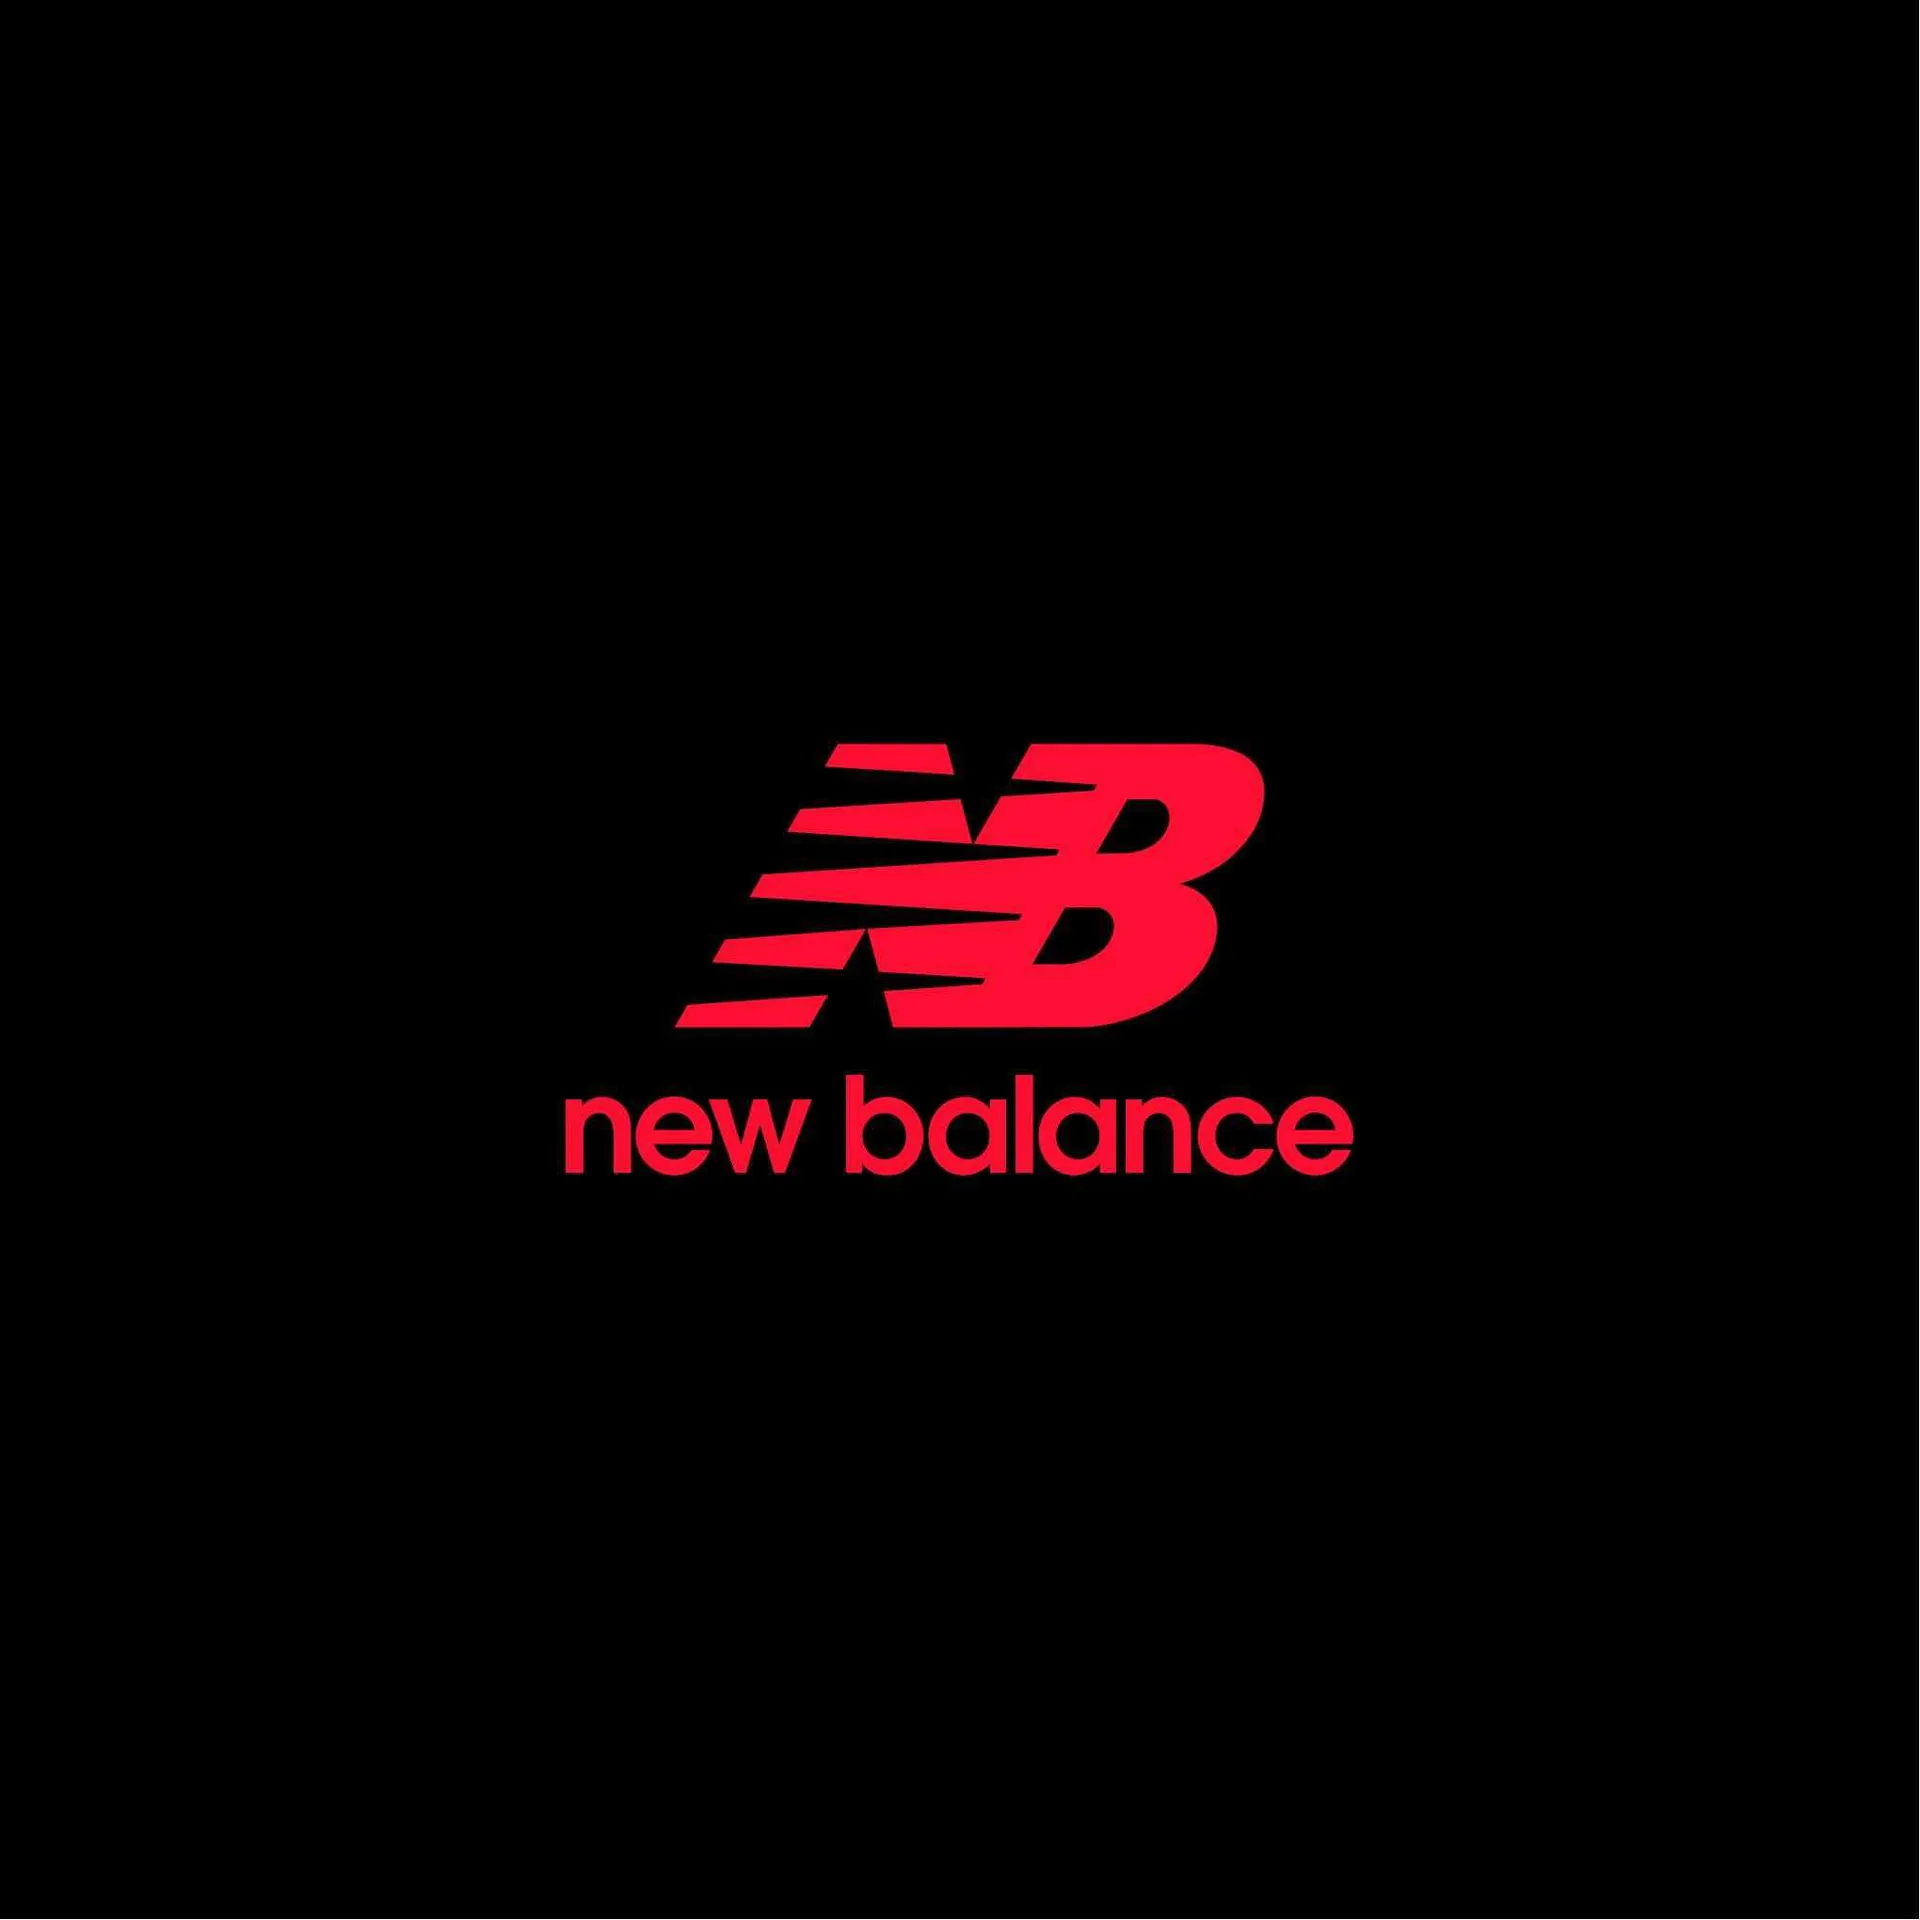 New Balance Folder - 12